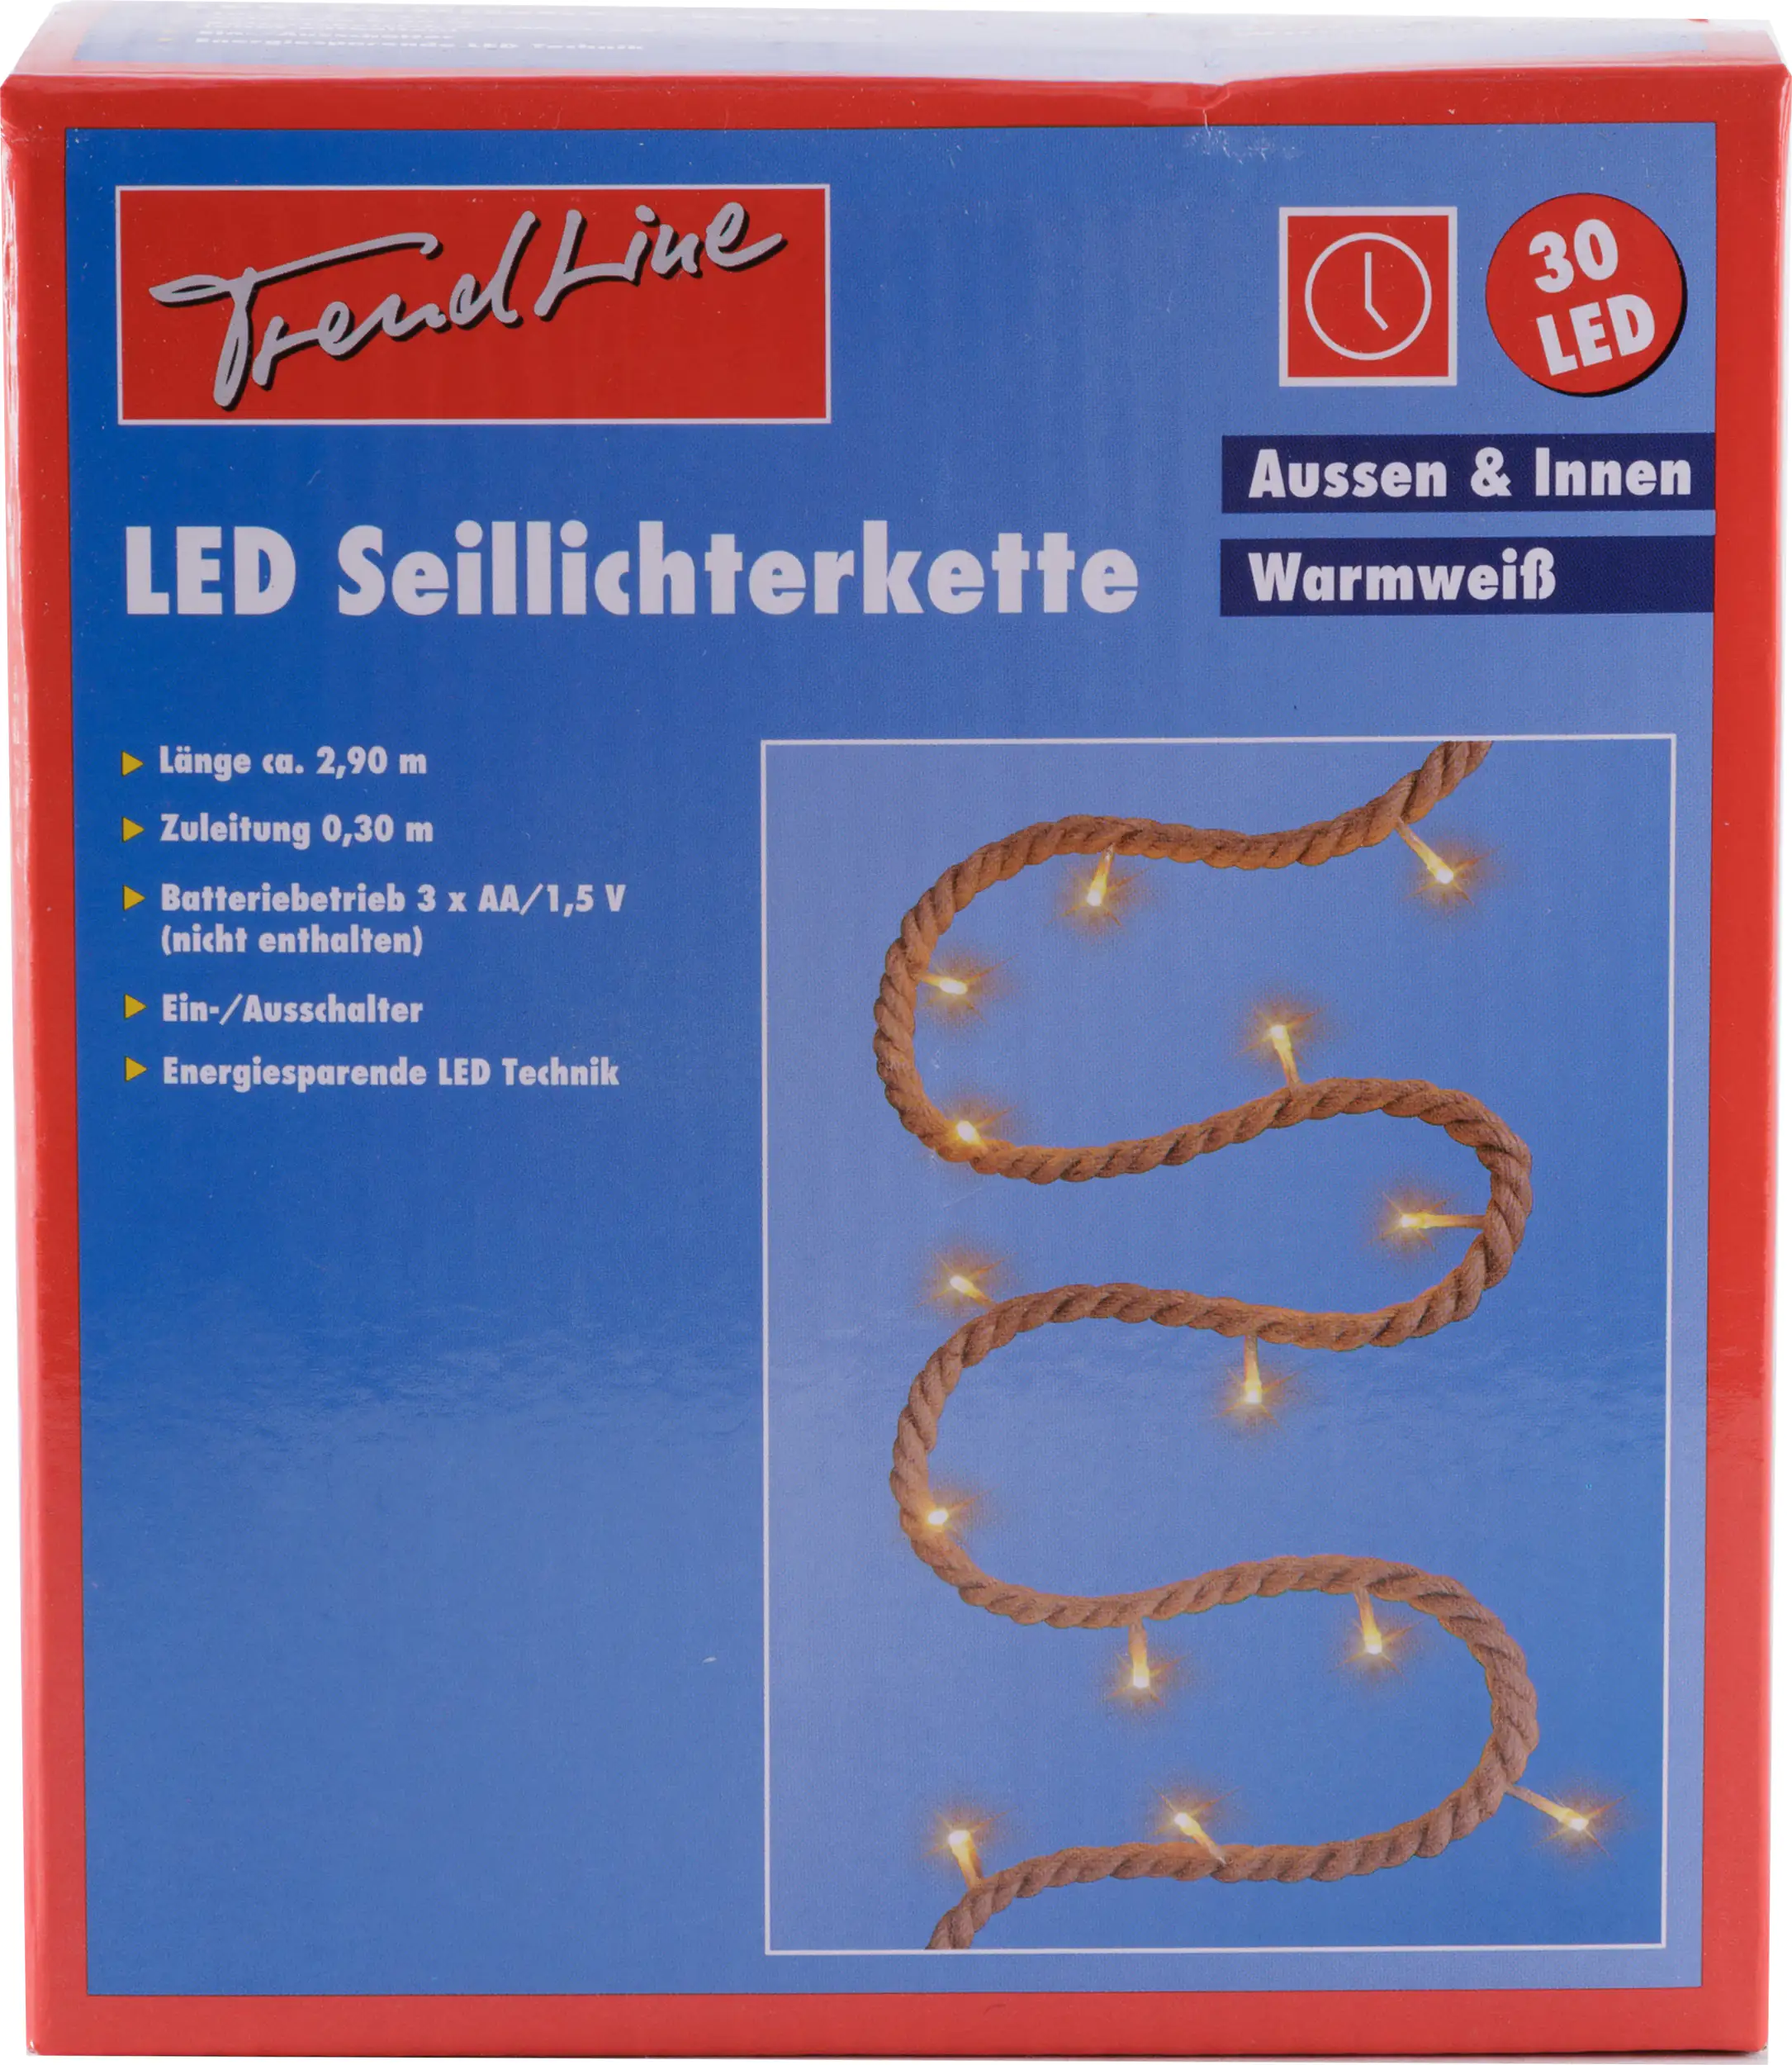 TrendLine LED Seillichterkette 30 LED für Innen und Außen